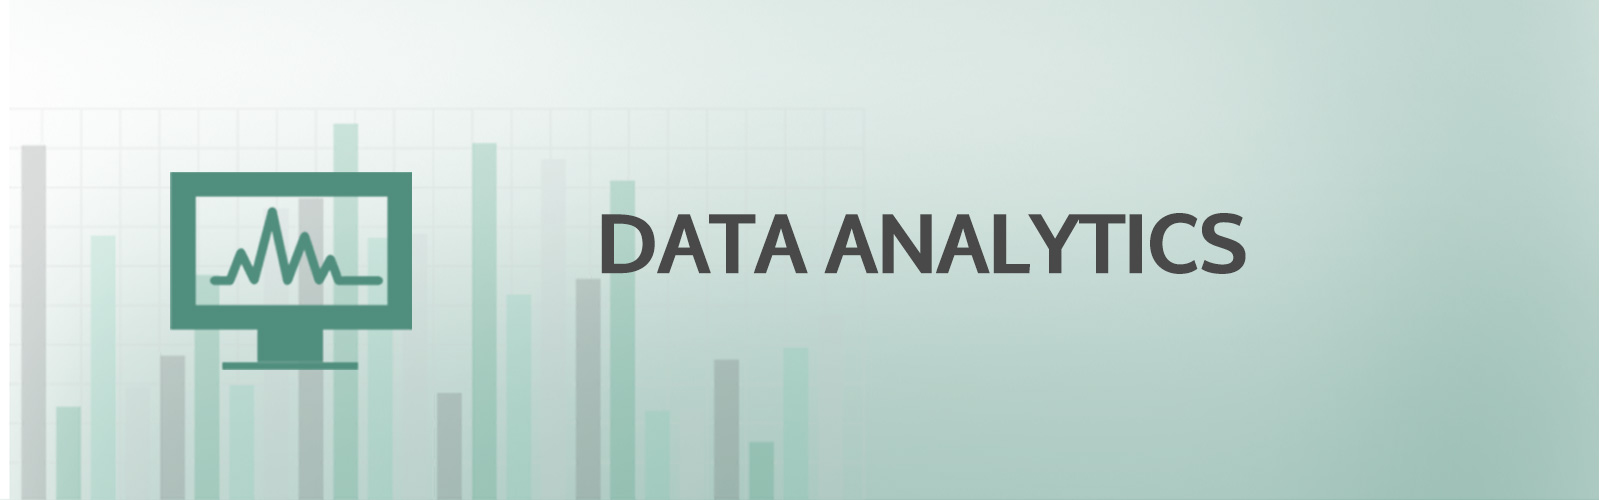 Business Analytics banner